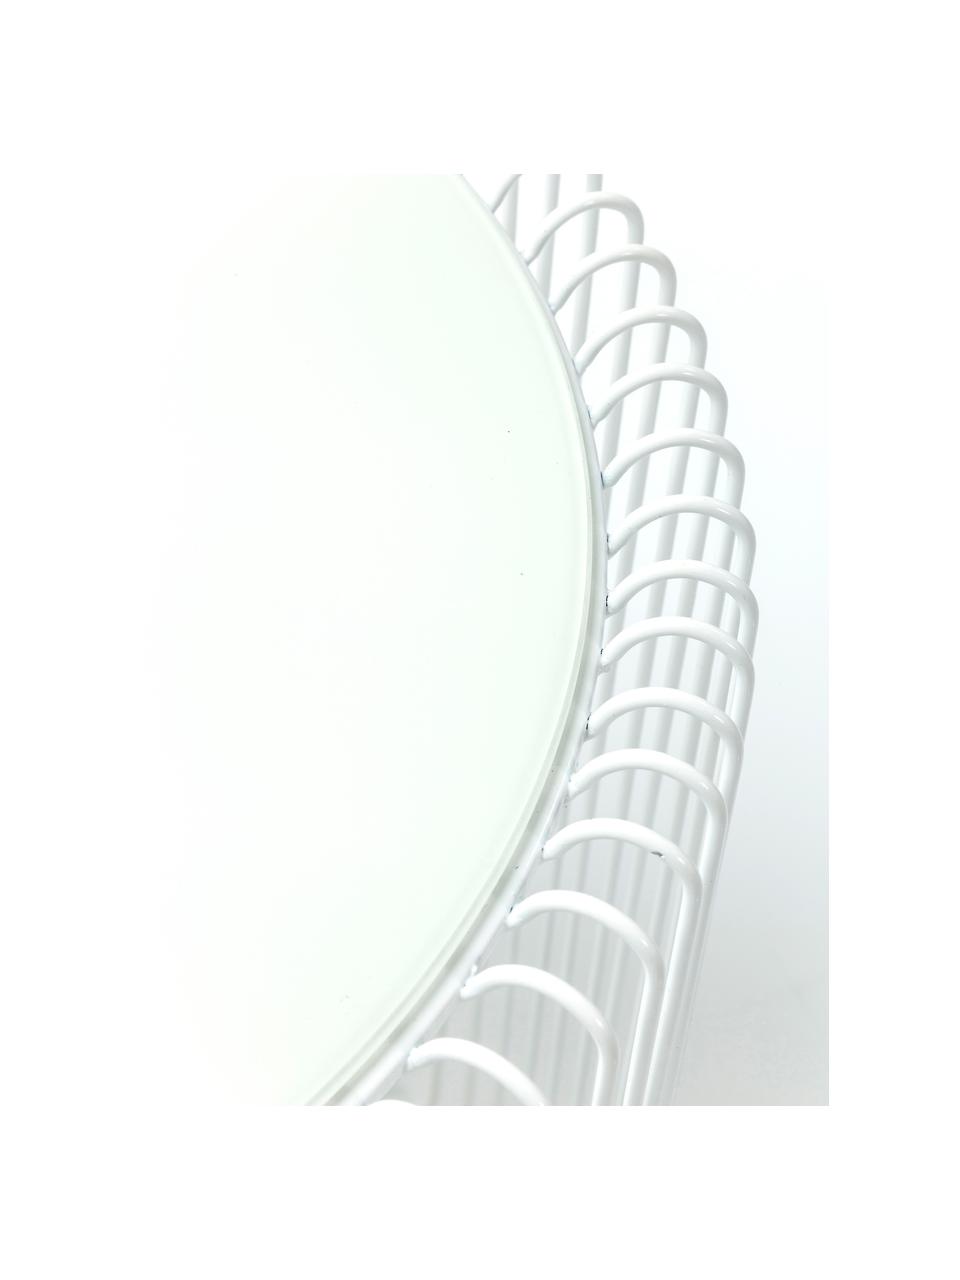 Metall-Beistelltisch 2er-Set Wire mit Glasplatte, Gestell: Metall, pulverbeschichtet, Tischplatte: Sicherheitsglas, foliert, Weiß, Set mit verschiedenen Größen